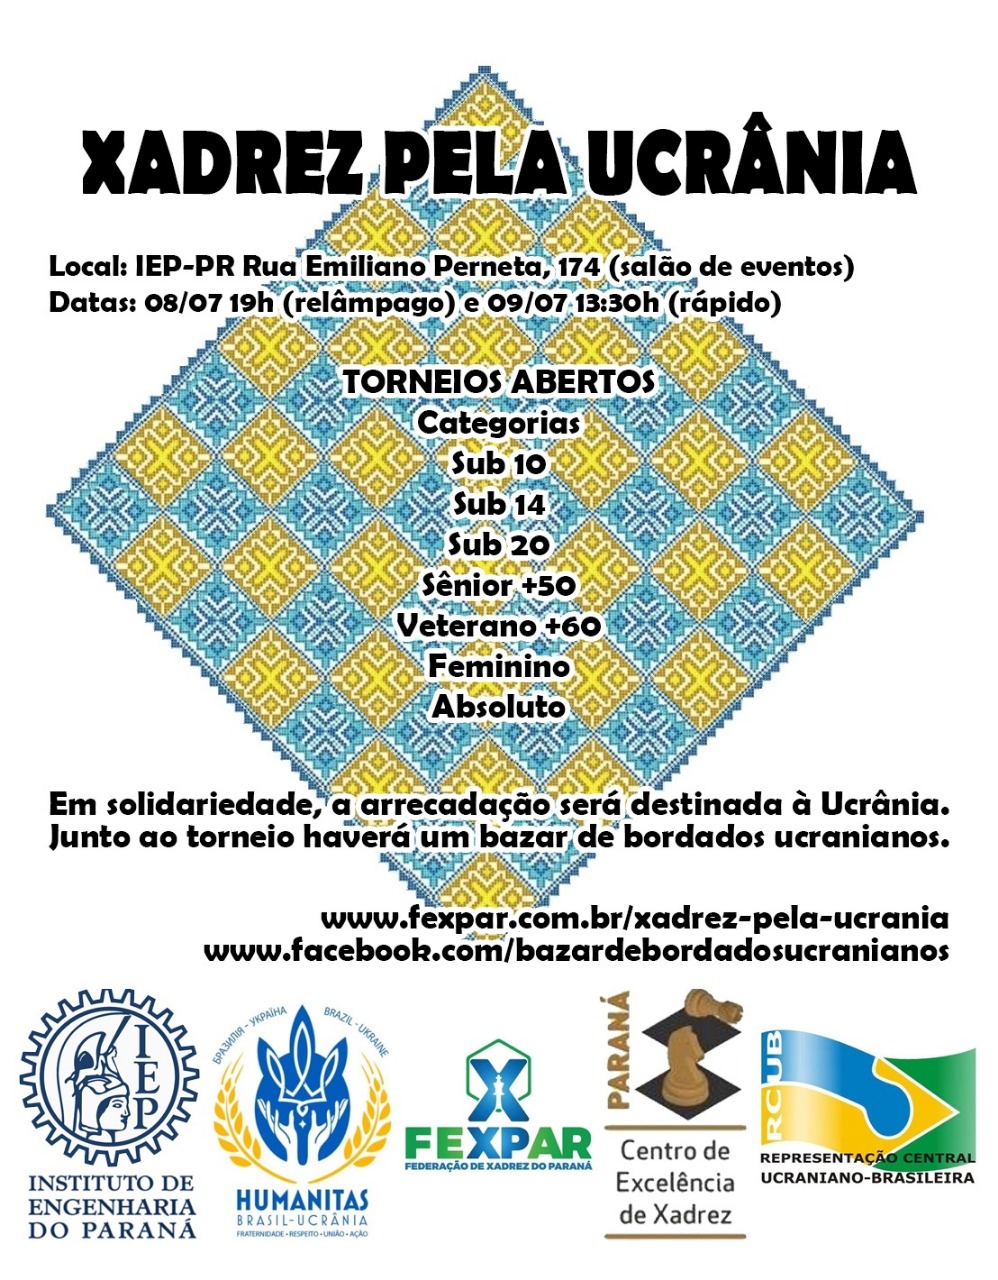 Federação de Xadrez do Paraná